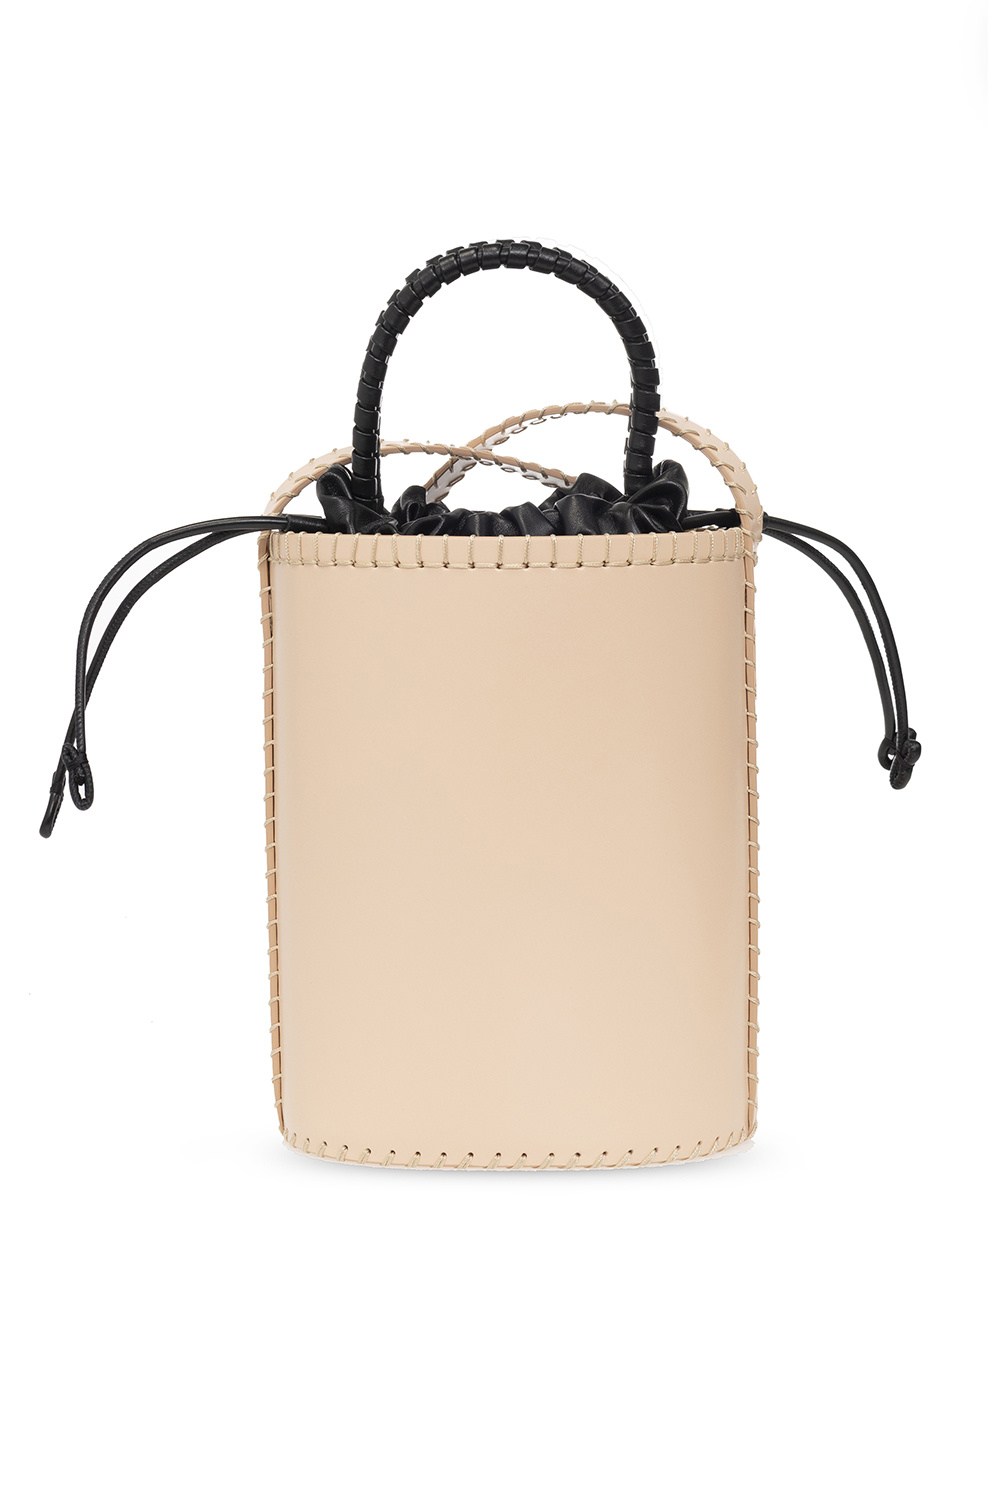 Chloé ‘Louela Small’ shoulder bag